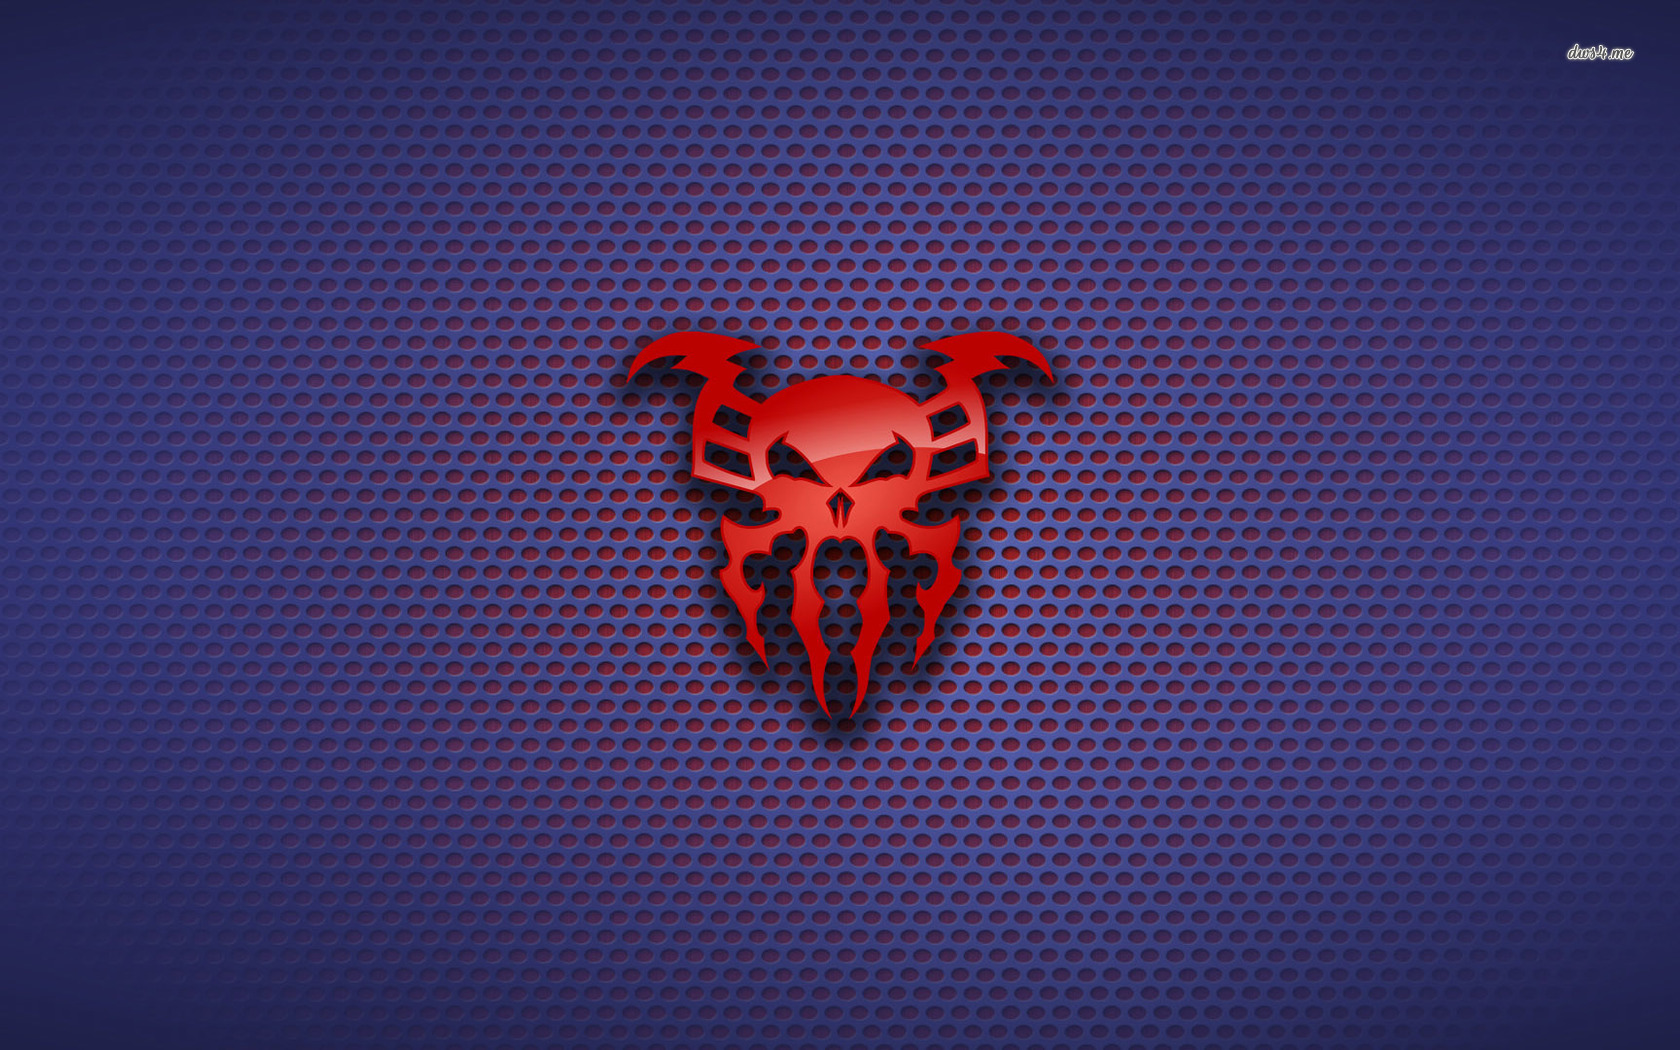 Spiderman Symbol As A Skull - HD Wallpaper 